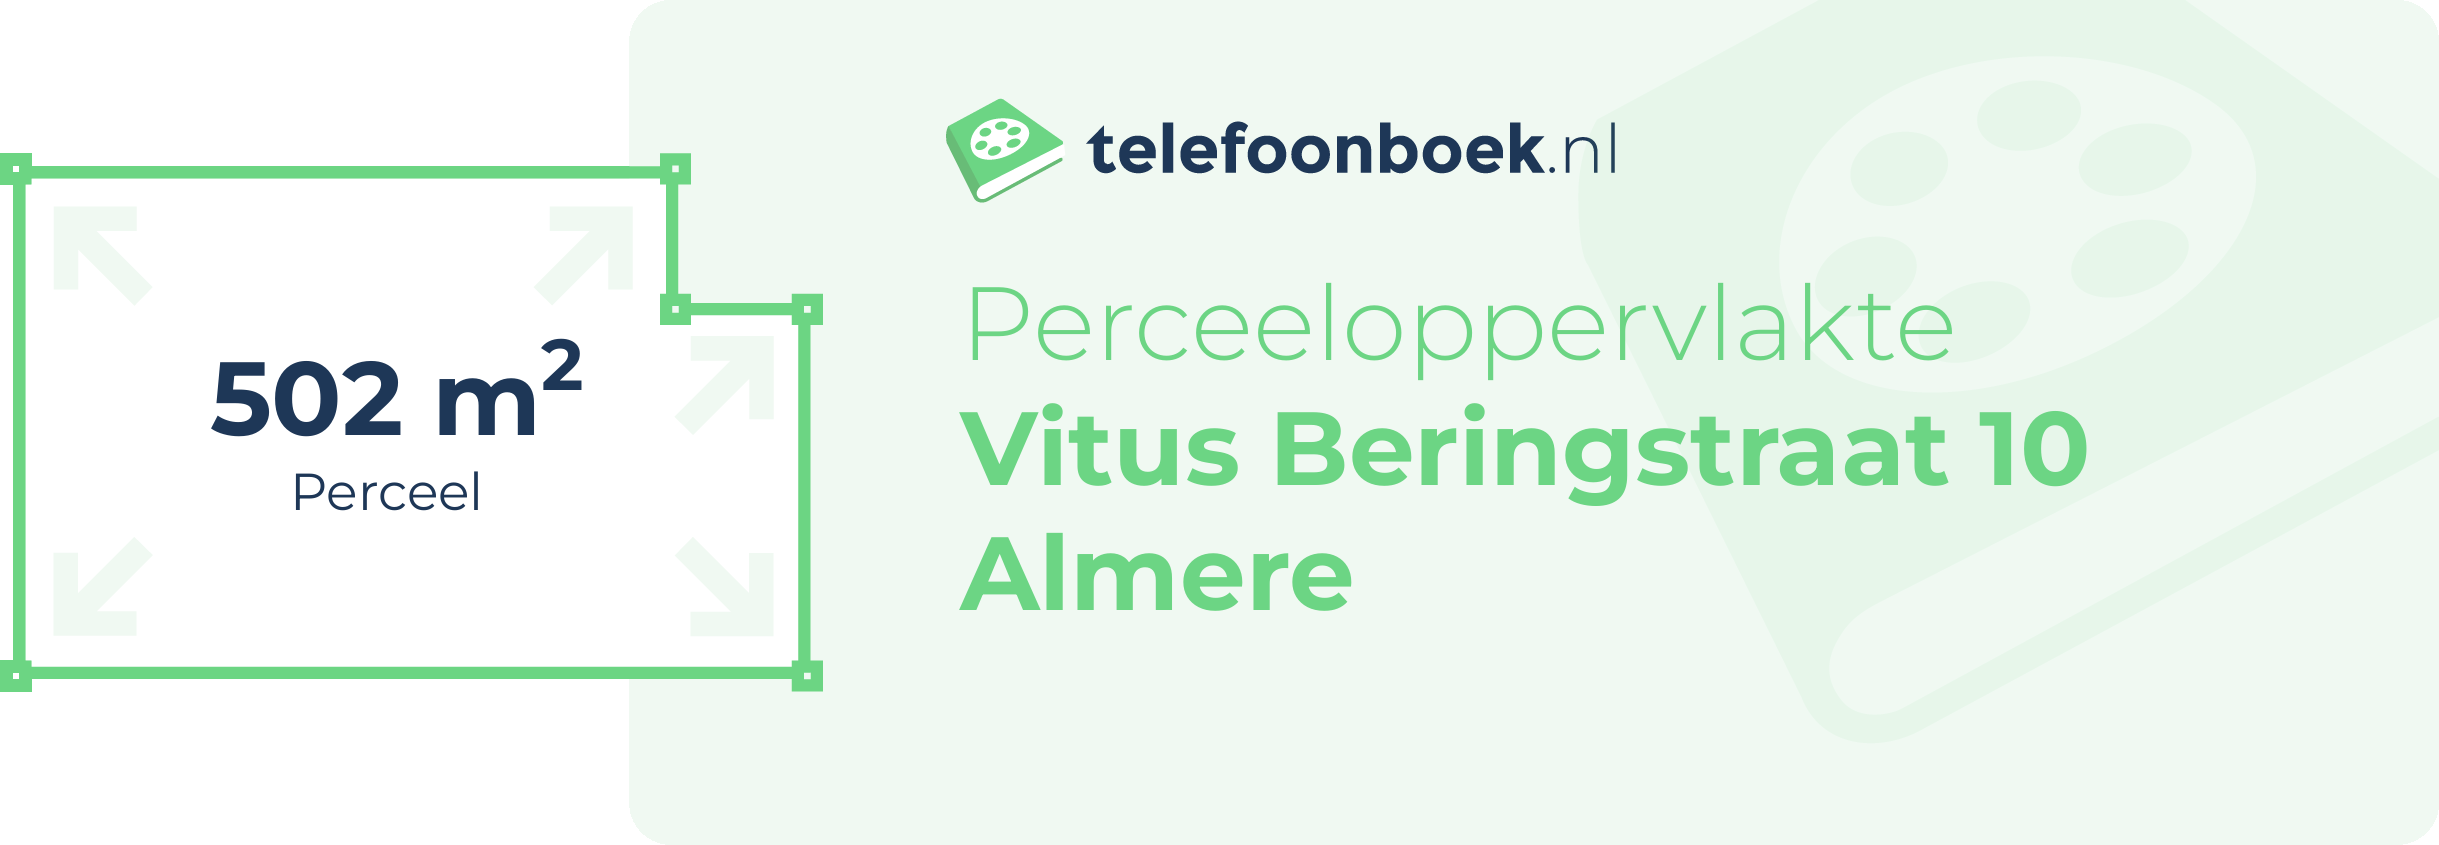 Perceeloppervlakte Vitus Beringstraat 10 Almere